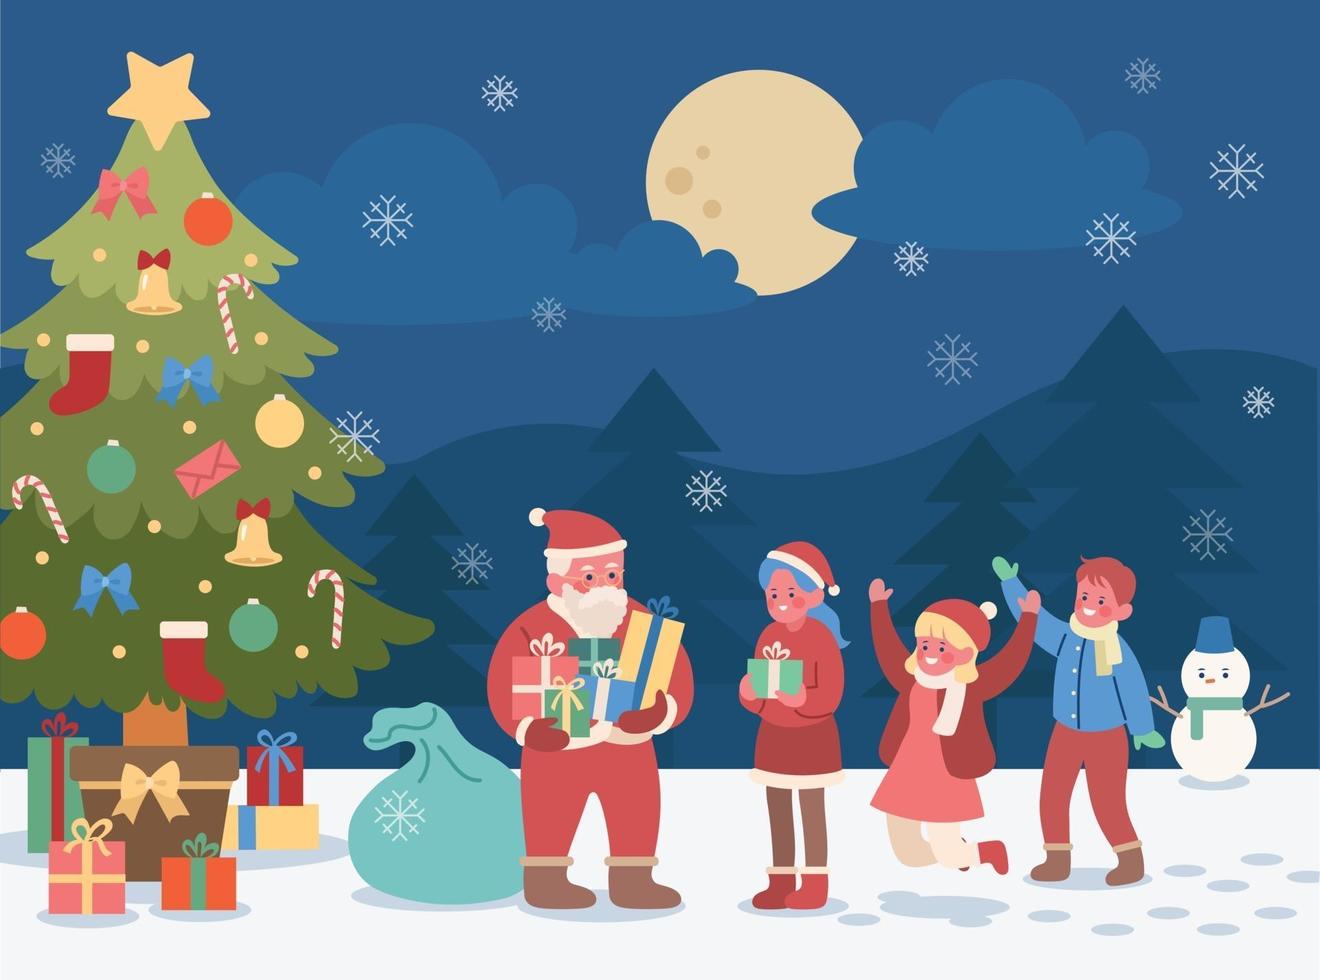 em um dia de neve, sob a grande árvore de natal, o papai noel distribui  presentes para as crianças. mão desenhada estilo ilustrações vetoriais.  2286383 Vetor no Vecteezy